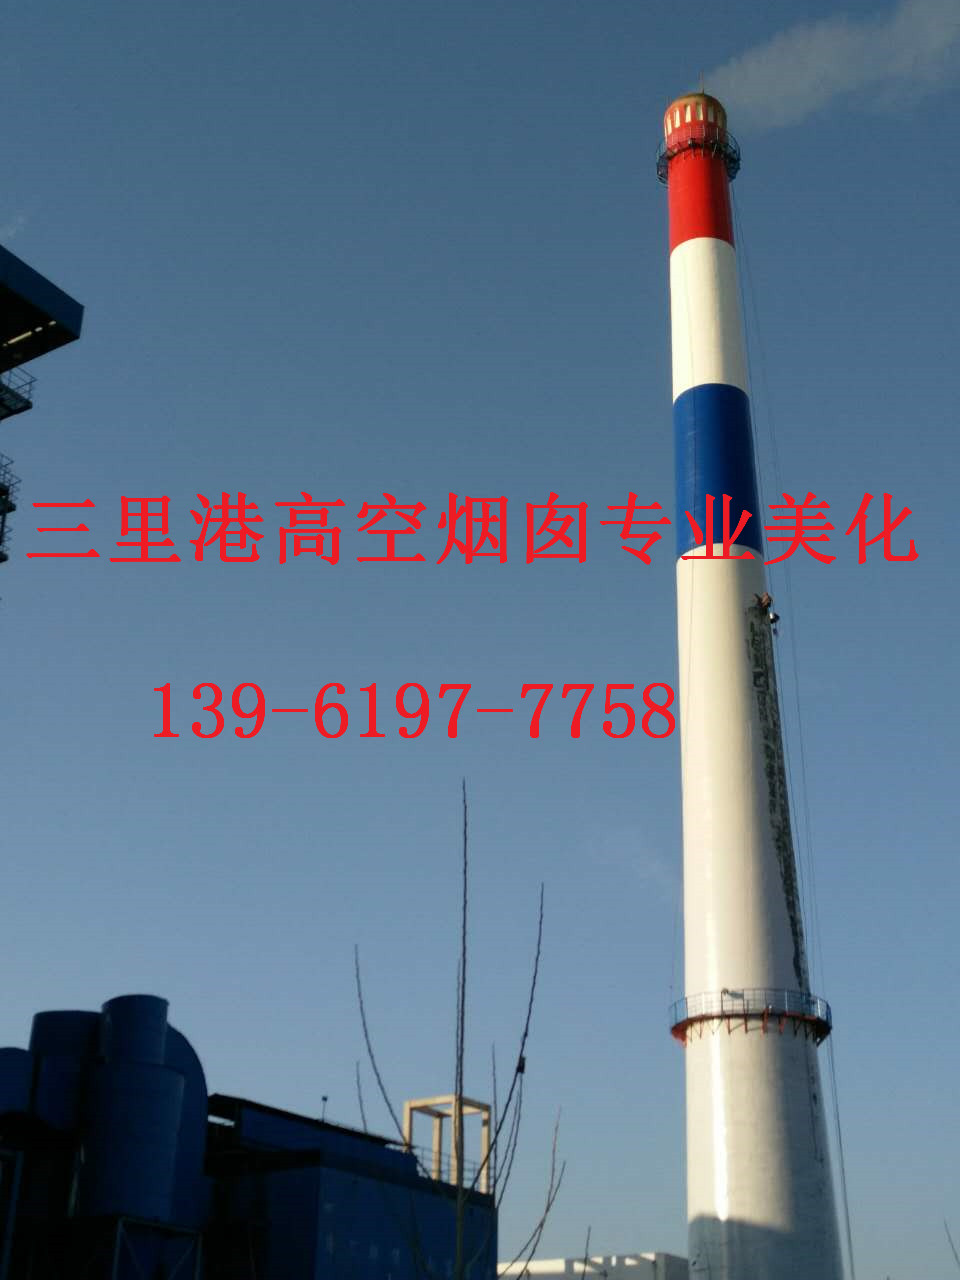 咸阳市烟囱刷航标施工工程大发展